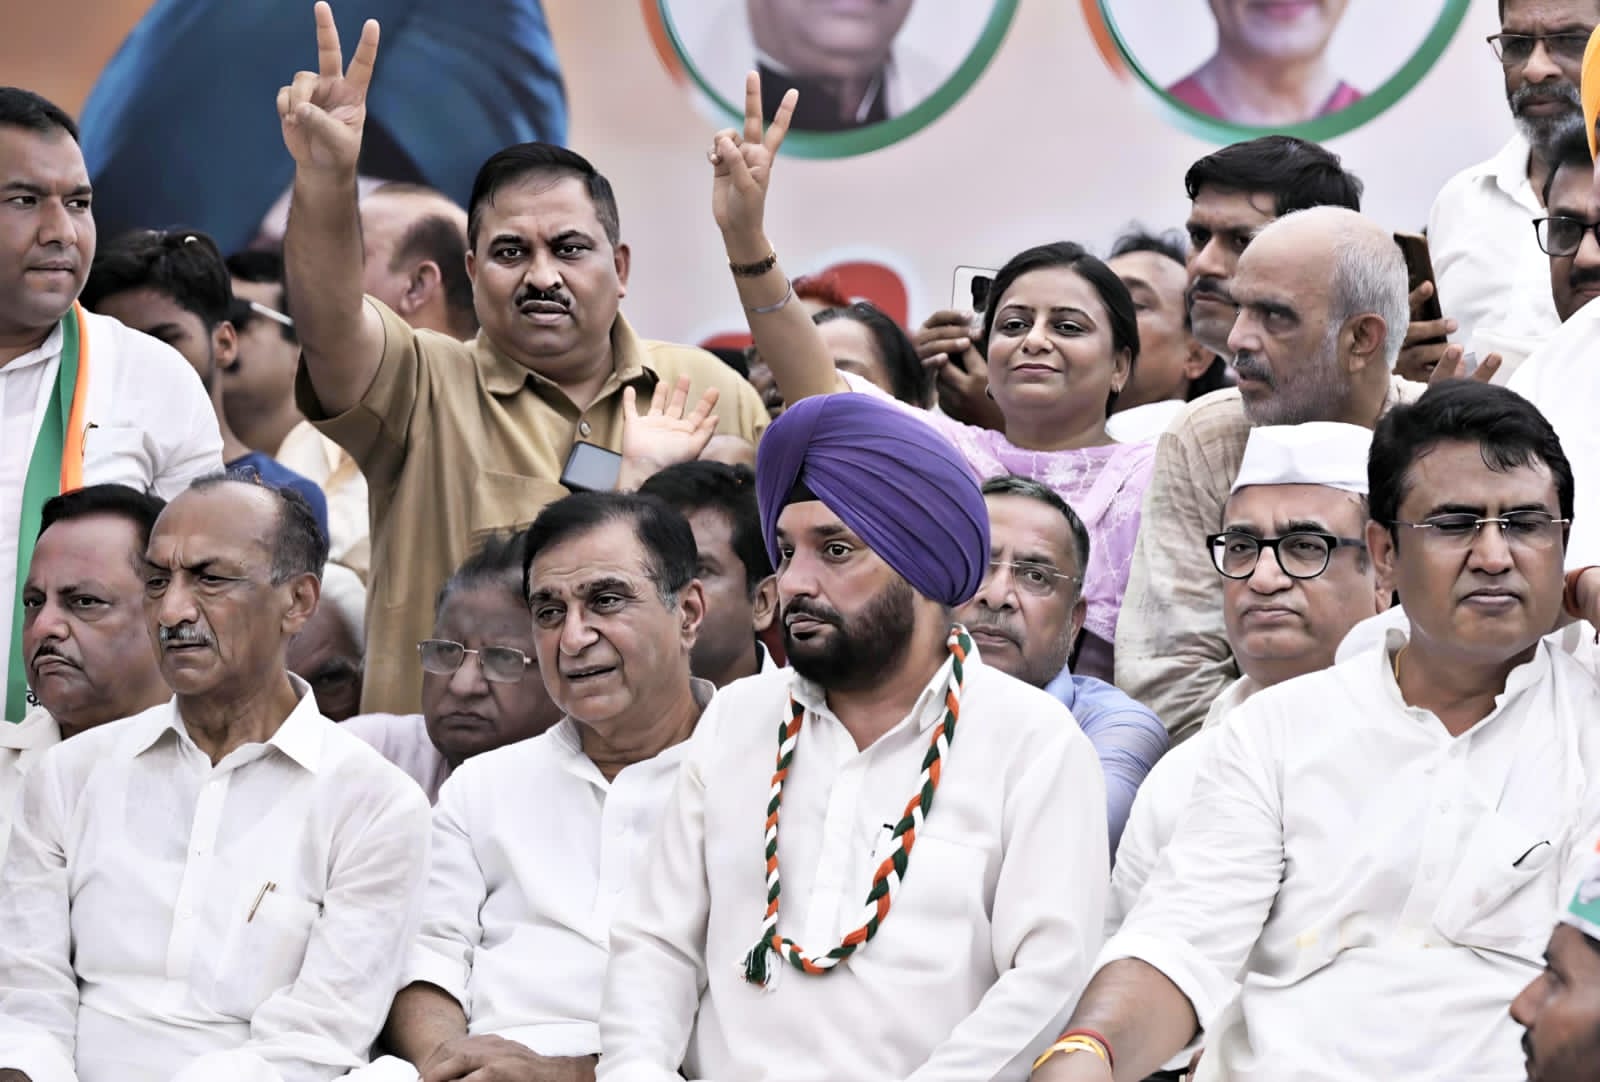 दिल्ली प्रदेश कांग्रेस कमेटी के अध्यक्ष बने अरविन्दर सिंह लवली, ऐसे हुआ पदग्रहण समारोह